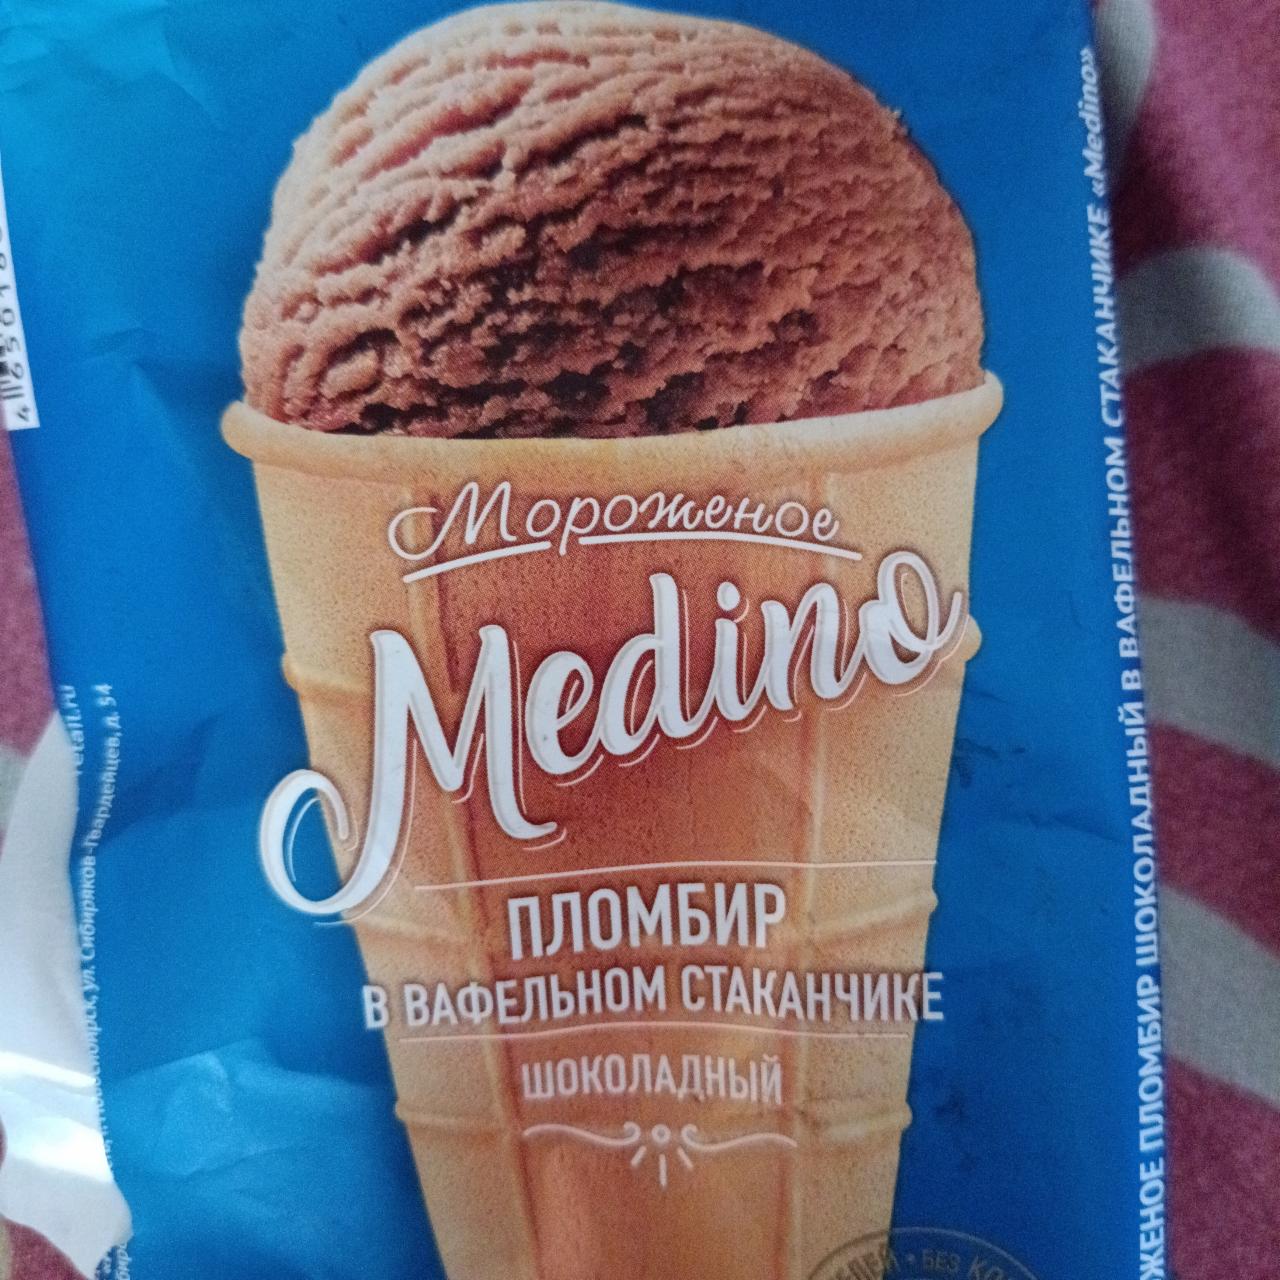 Фото - Мороженное пломбир в вафельном стаканчике шоколадный Medino Новосибхолод